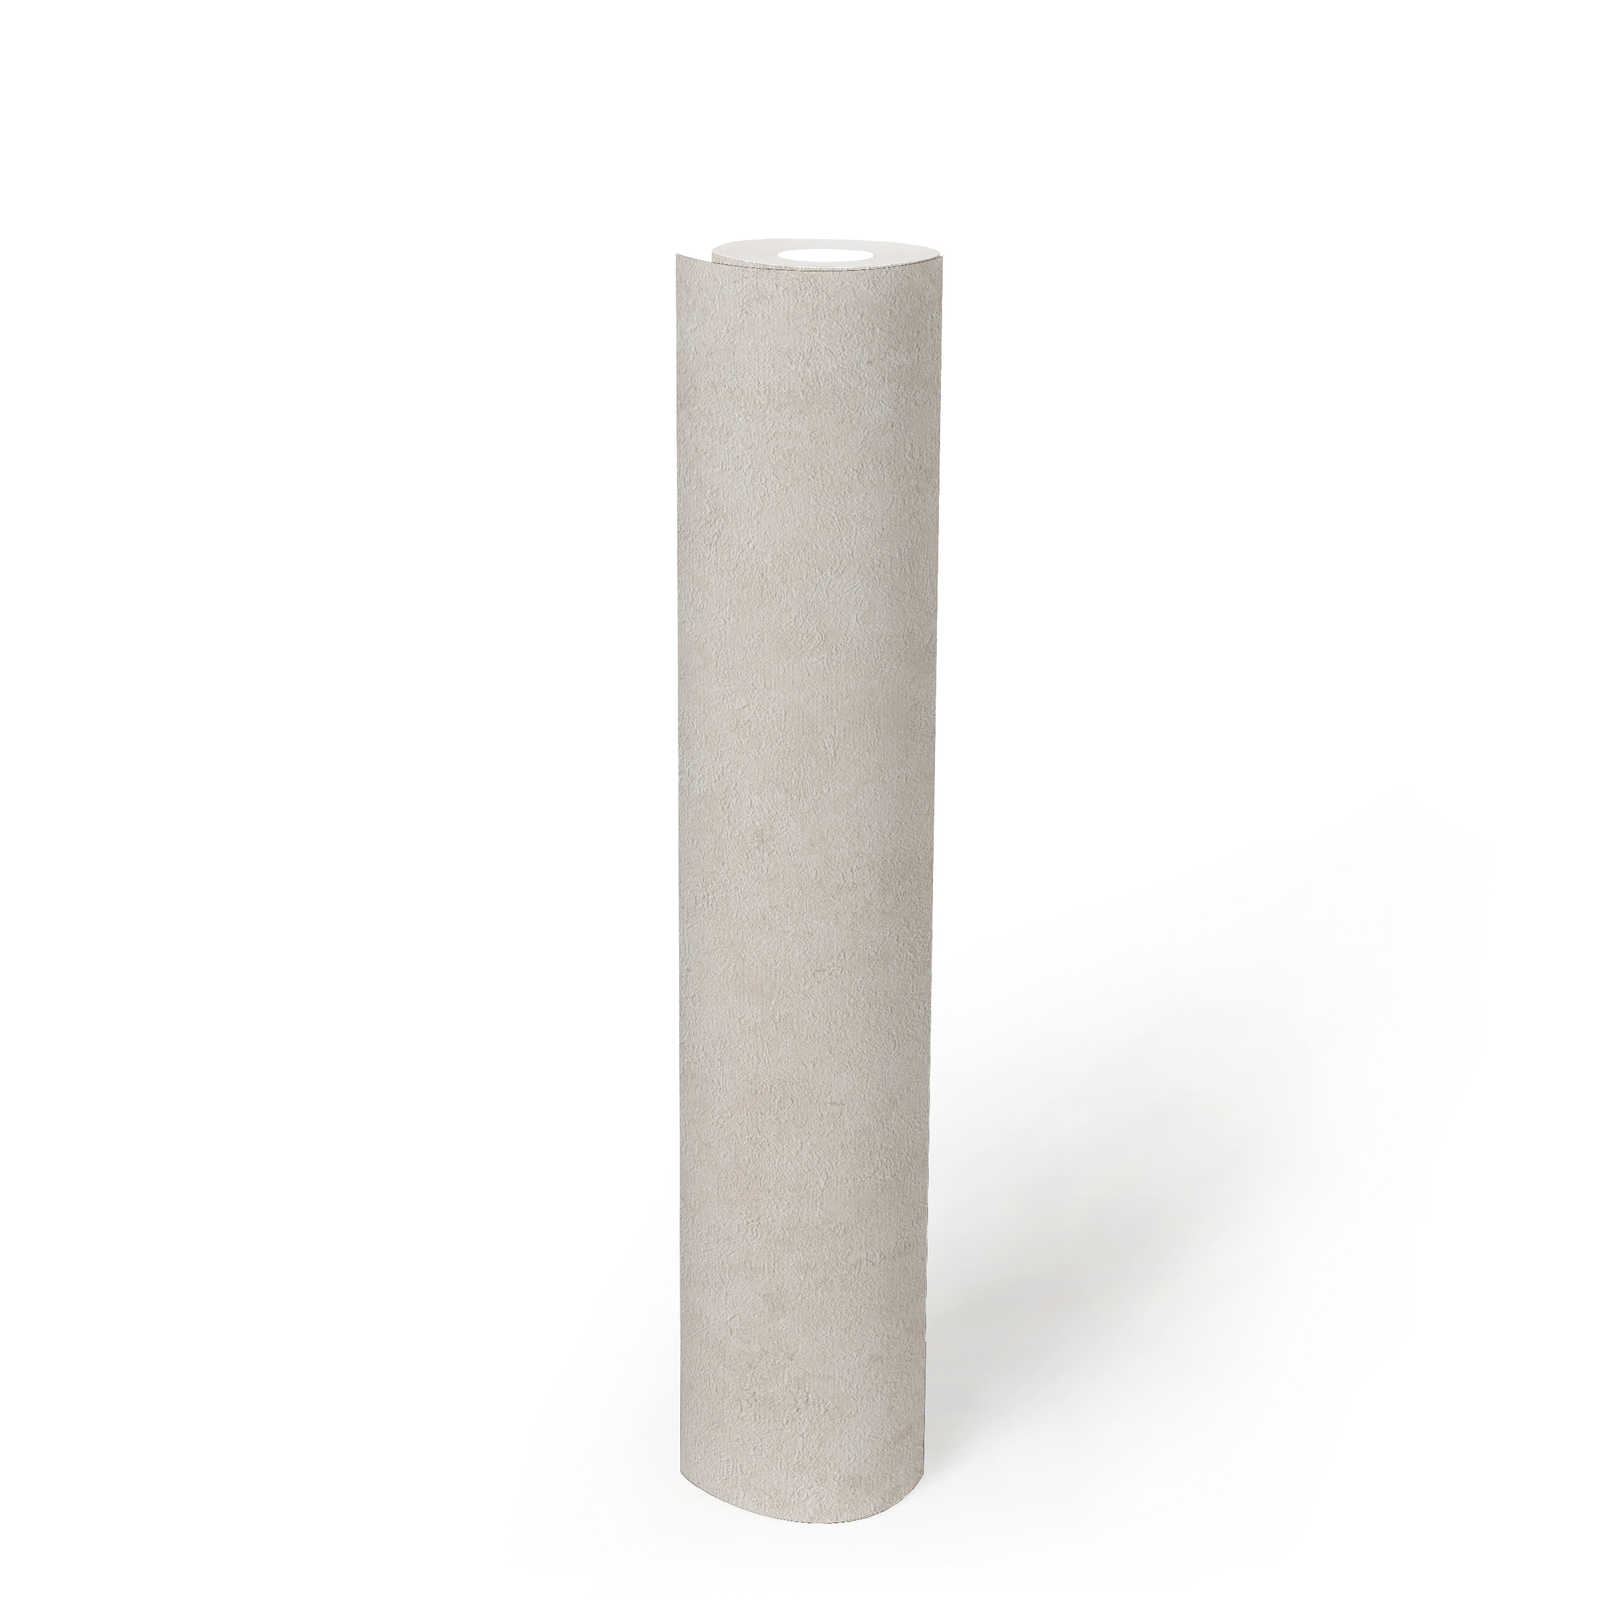             Vliestapete einfarbig mit Strukturmuster – Weiß, Hellgrau
        